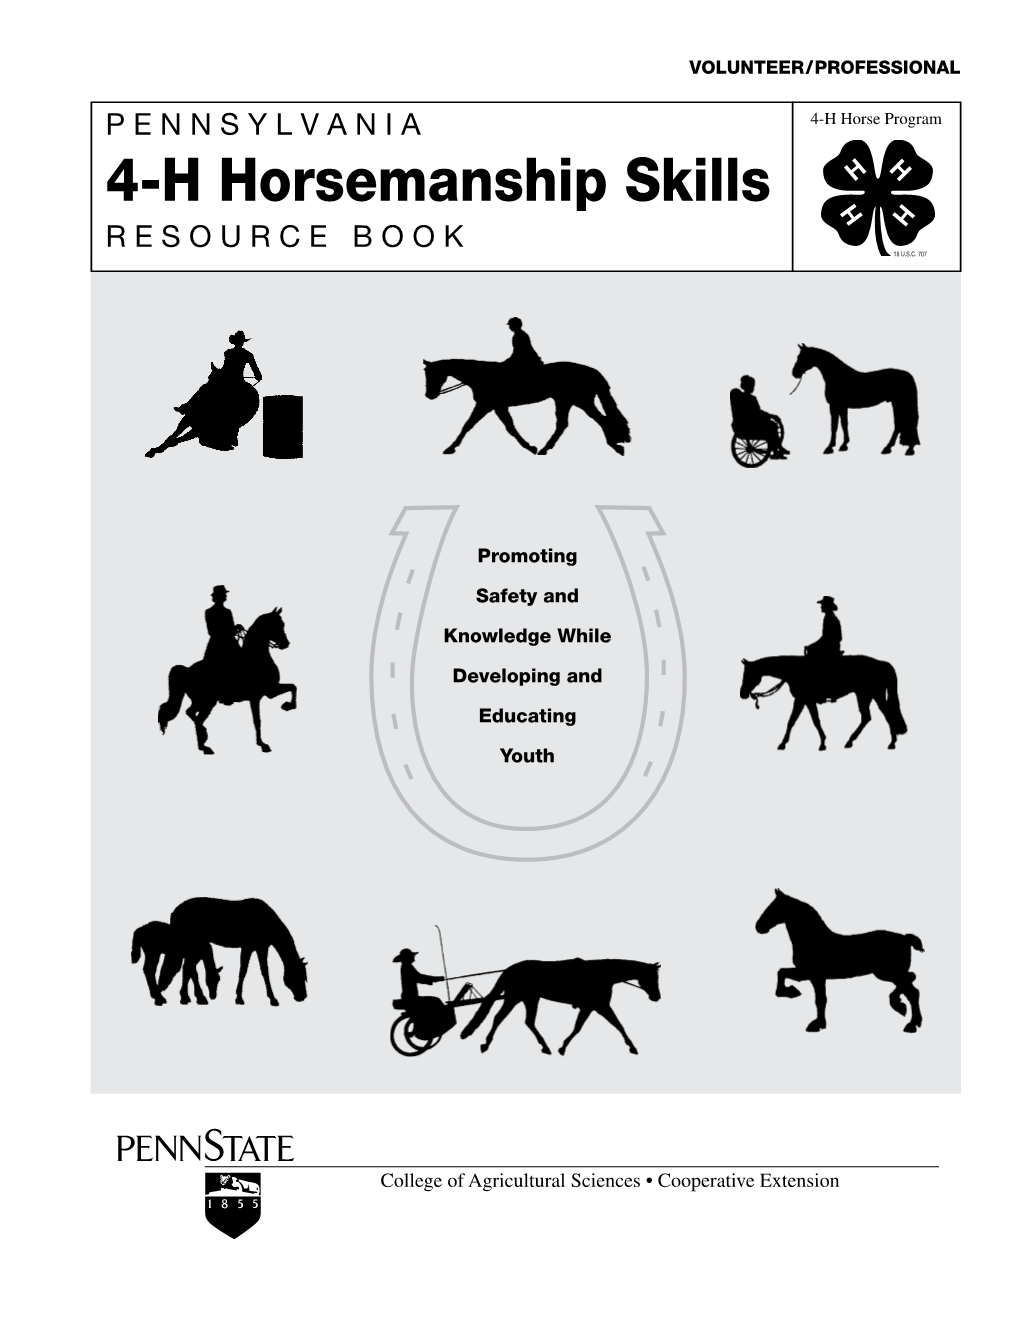 4-H Horsemanship Skills R E S O U R C E B O O K 18 U.S.C